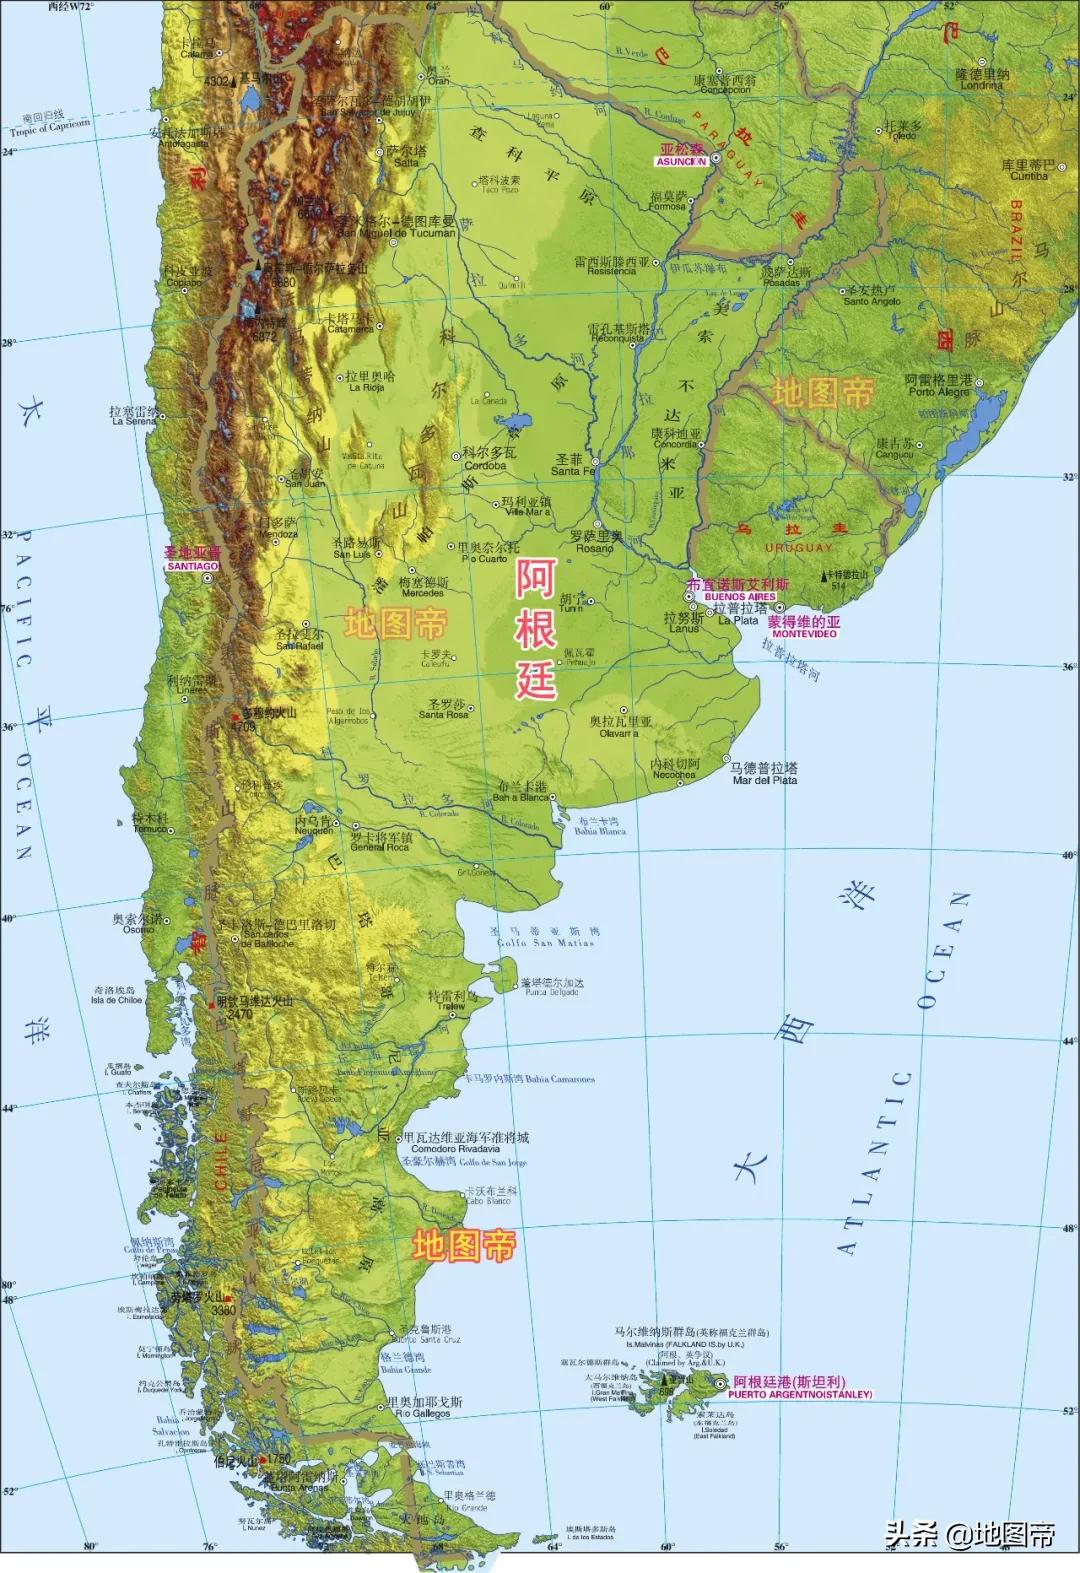 阿根廷和乌拉圭都是西班牙殖民地，为何分成两个国家？